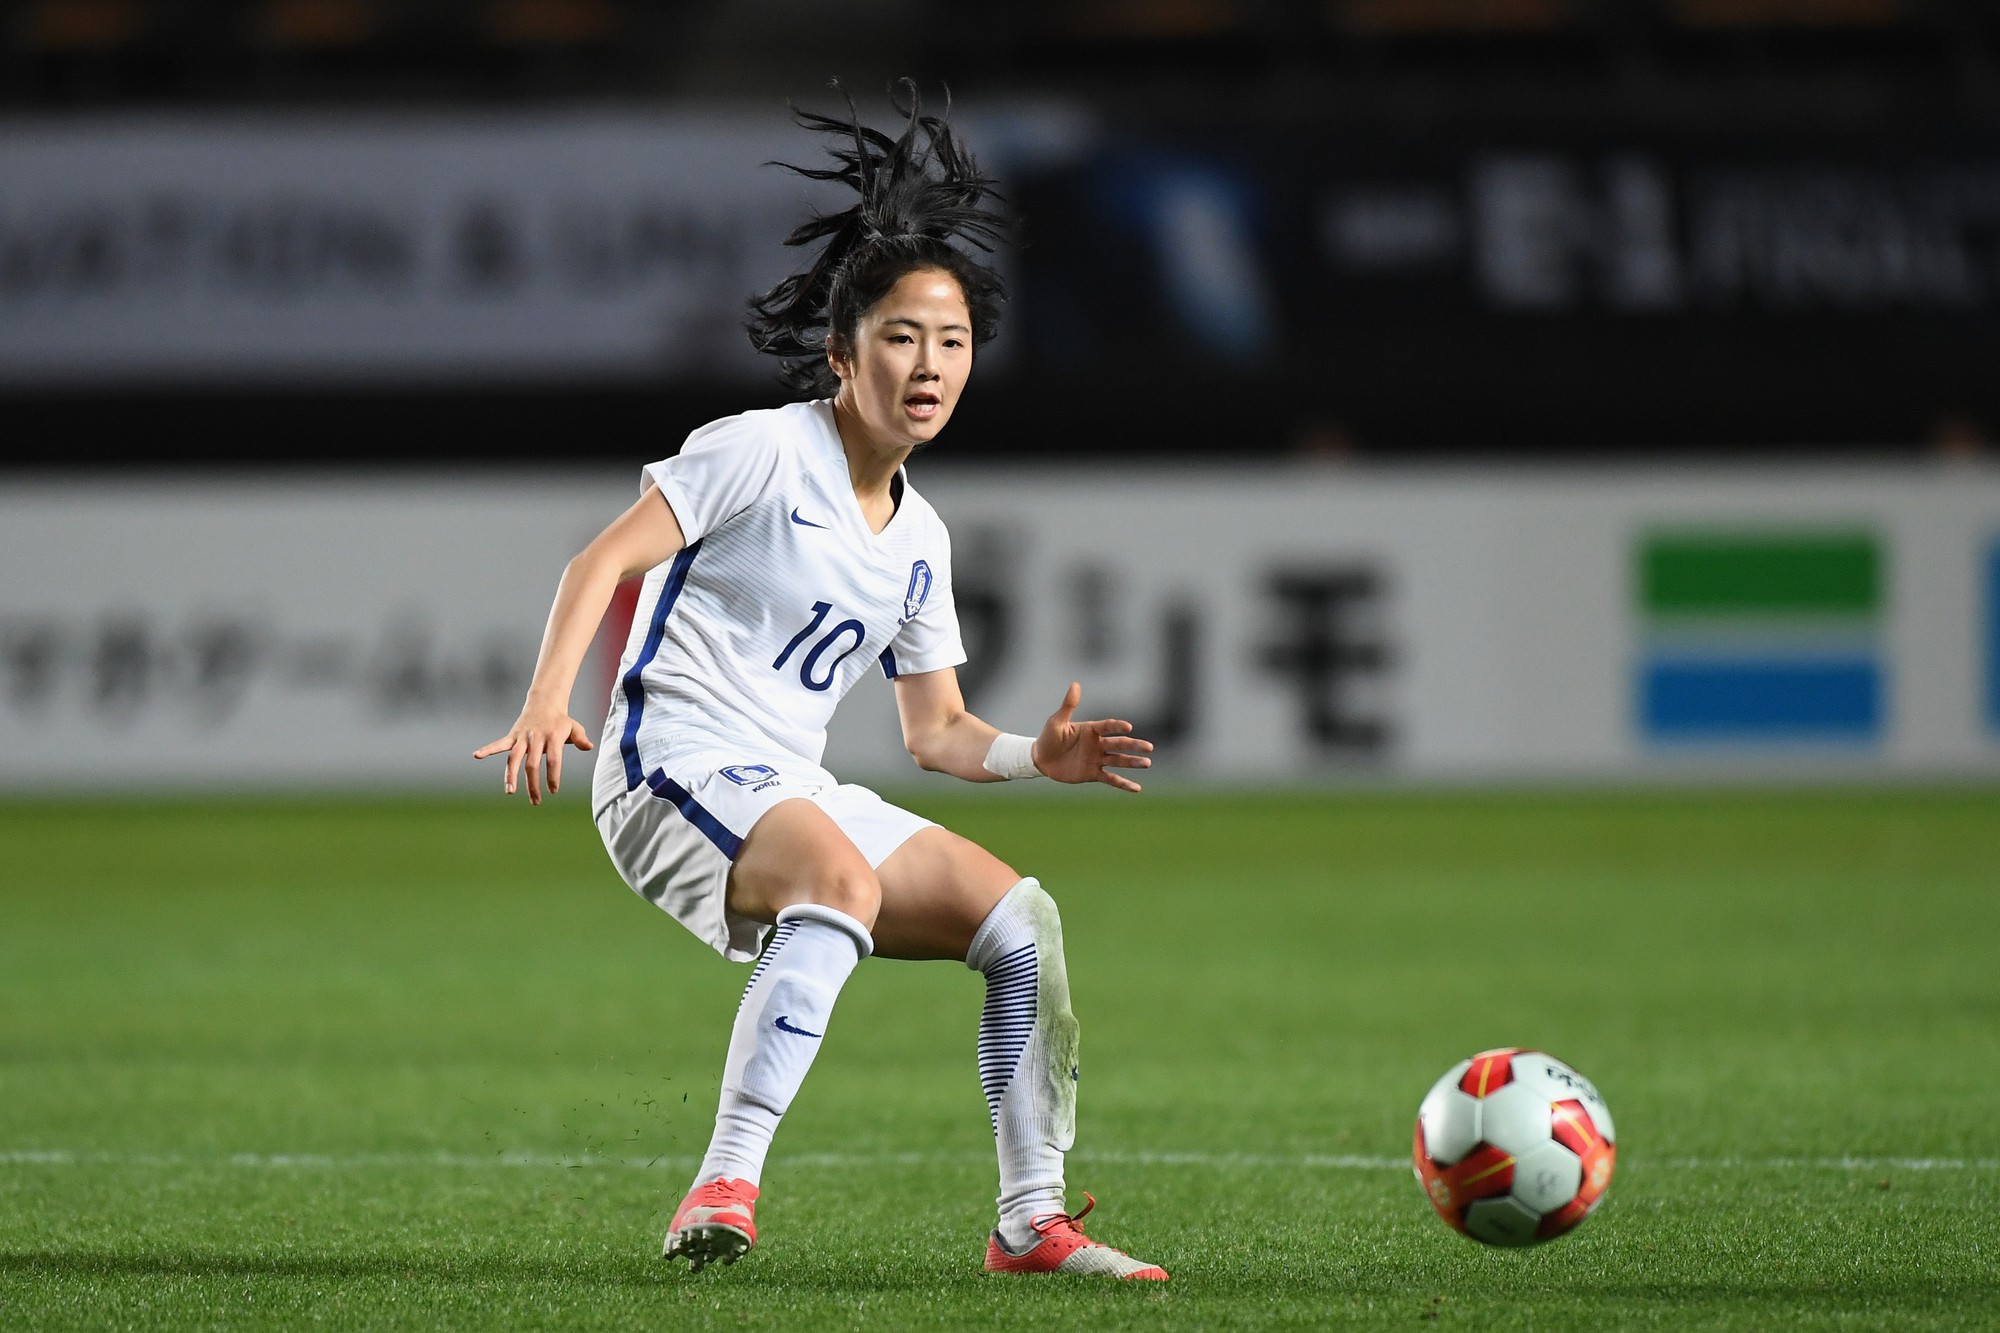 Nhan sắc xinh đẹp của nữ tiền vệ Hàn Quốc dự ASIAD 2018 - Ảnh 1.